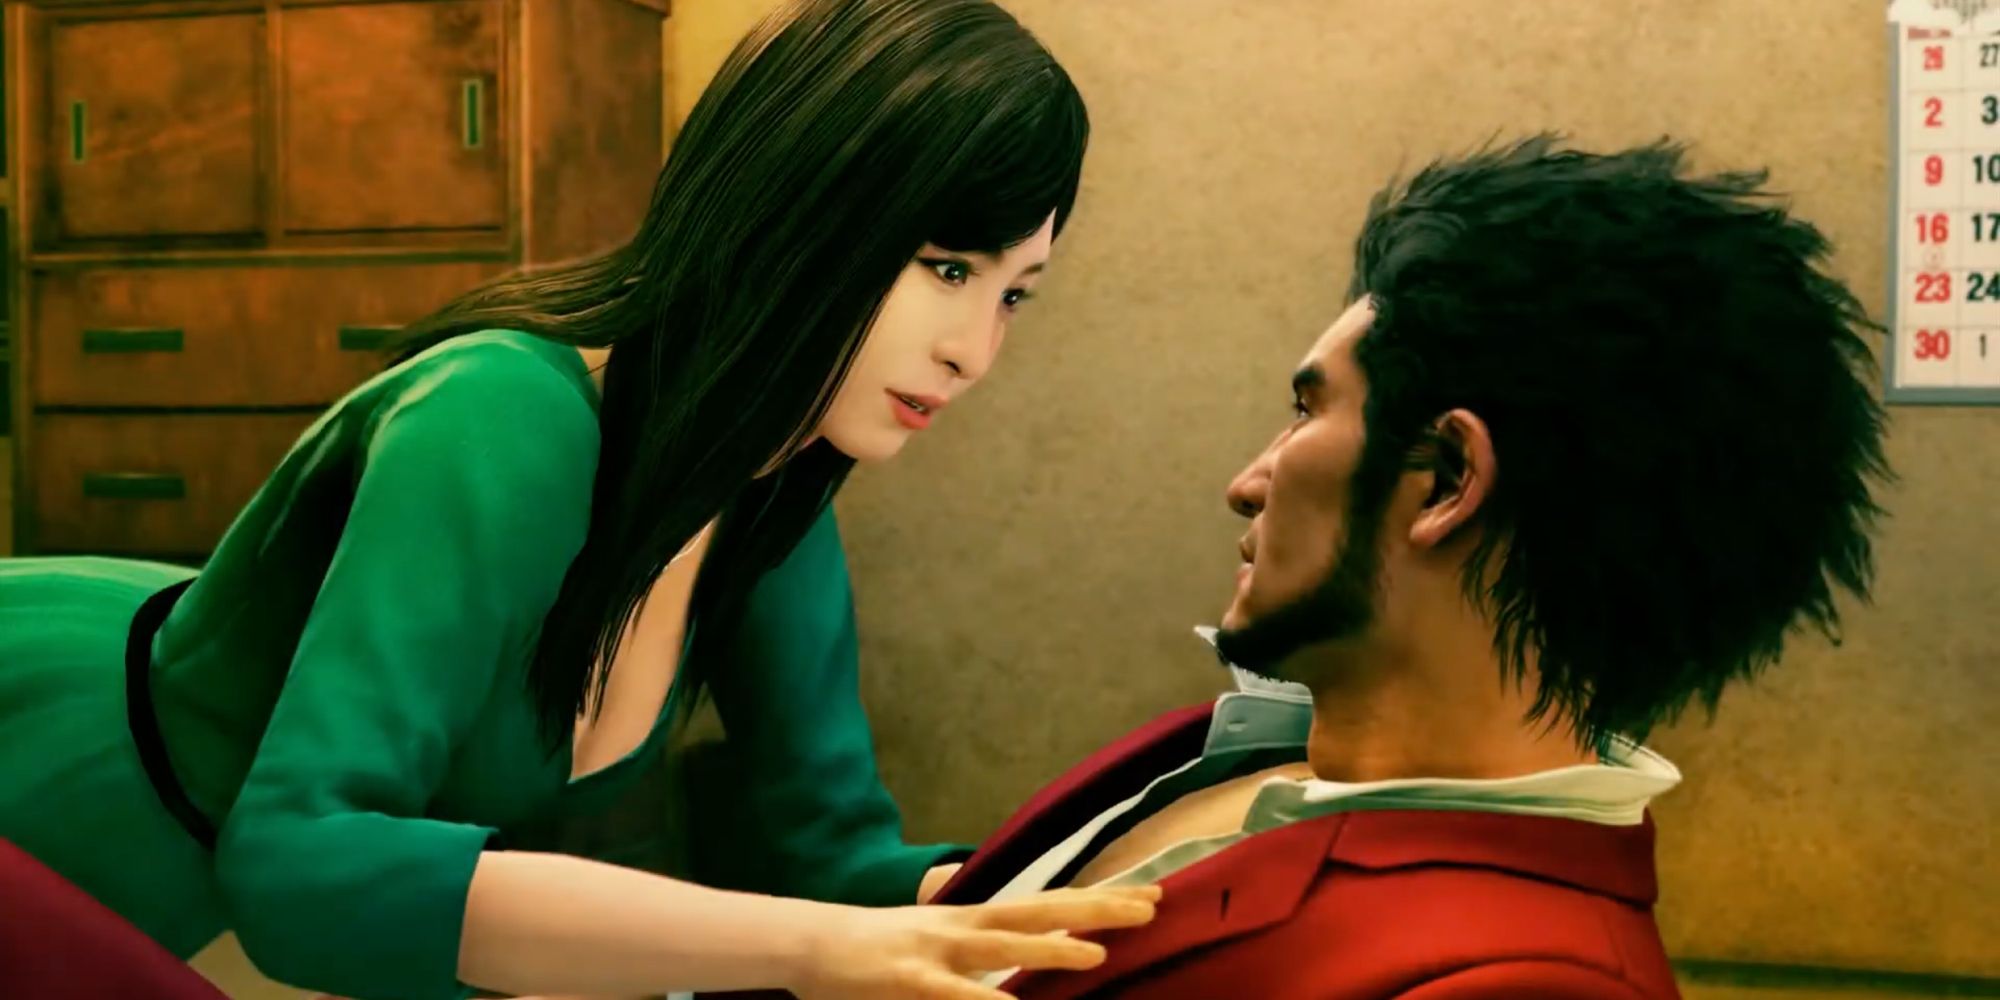 A screenshot from Yakuza: Like A Dragon, showing Ichiban embracing Iroha